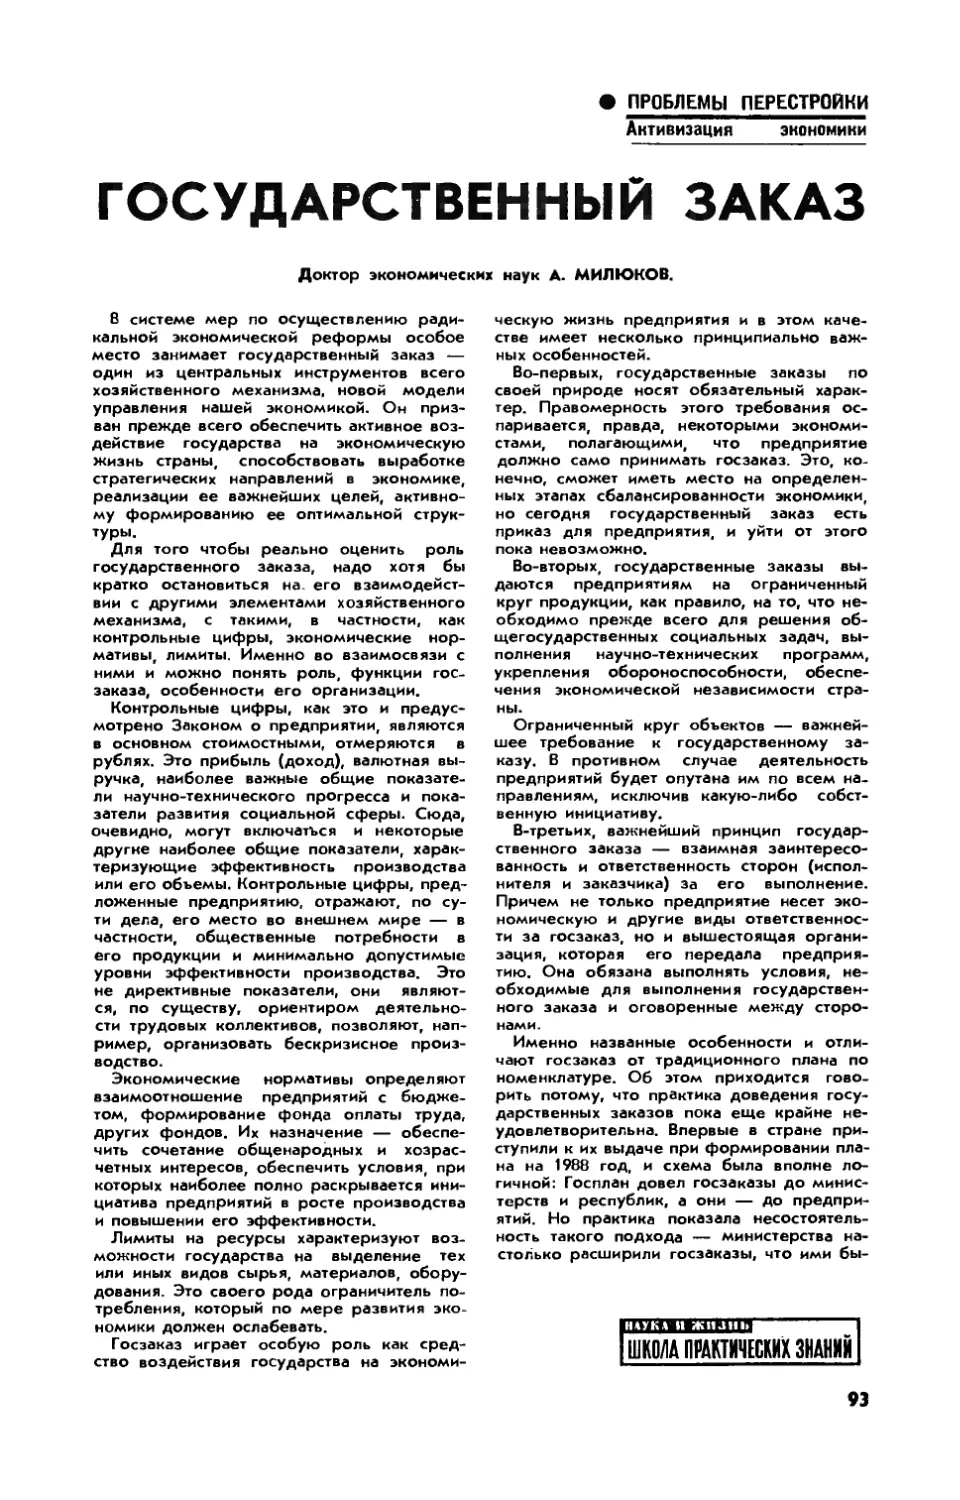 А. МИЛЮКОВ, докт. эконом. наук — Государственный заказ